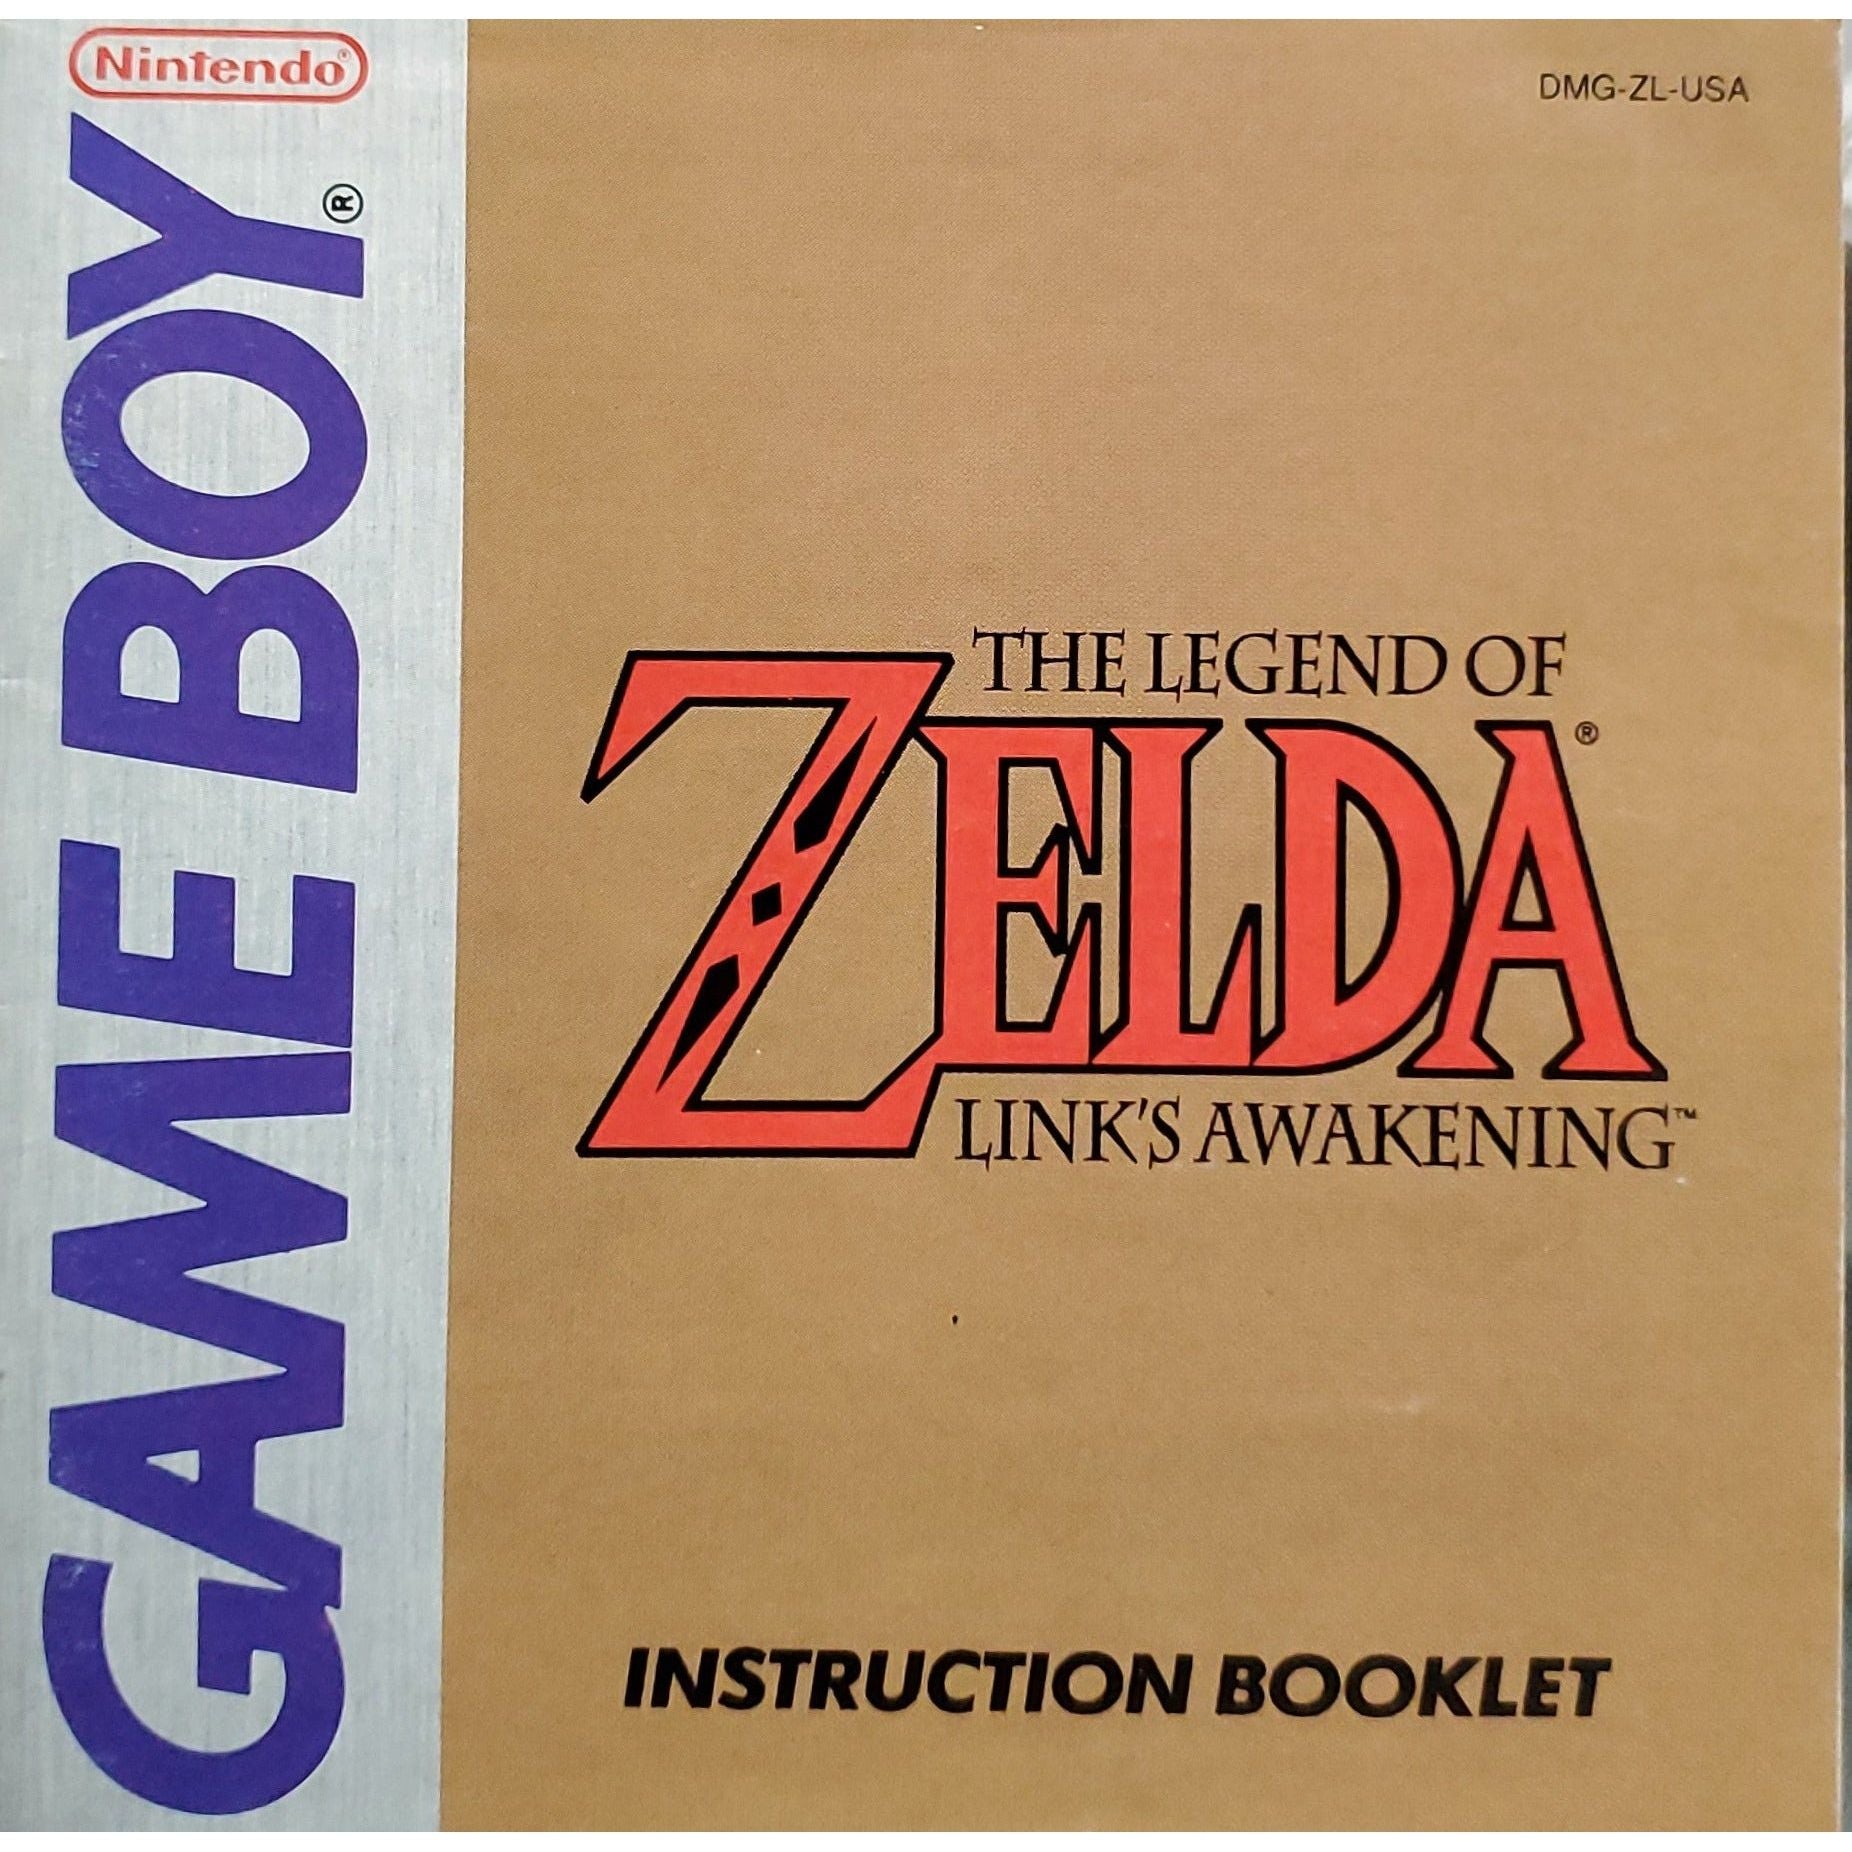 GB - The Legend of Zelda Link's Awakening (Manual)